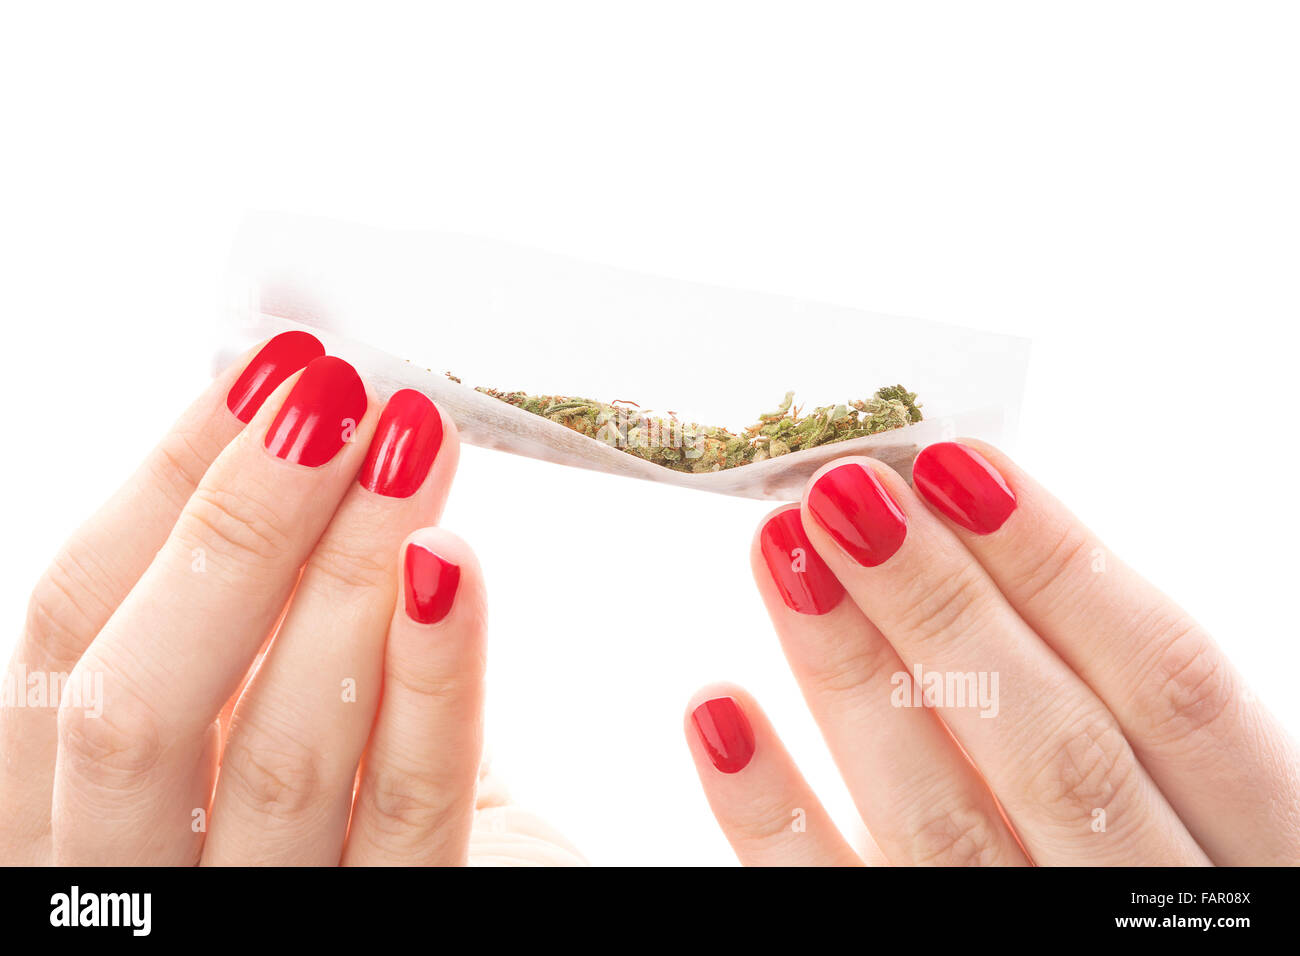 Hände, die isoliert auf weißem Hintergrund rollt ein Cannabis gemeinsame. Rauchen Marihuana sucht. Feminine Drogenmissbrauch. Stockfoto